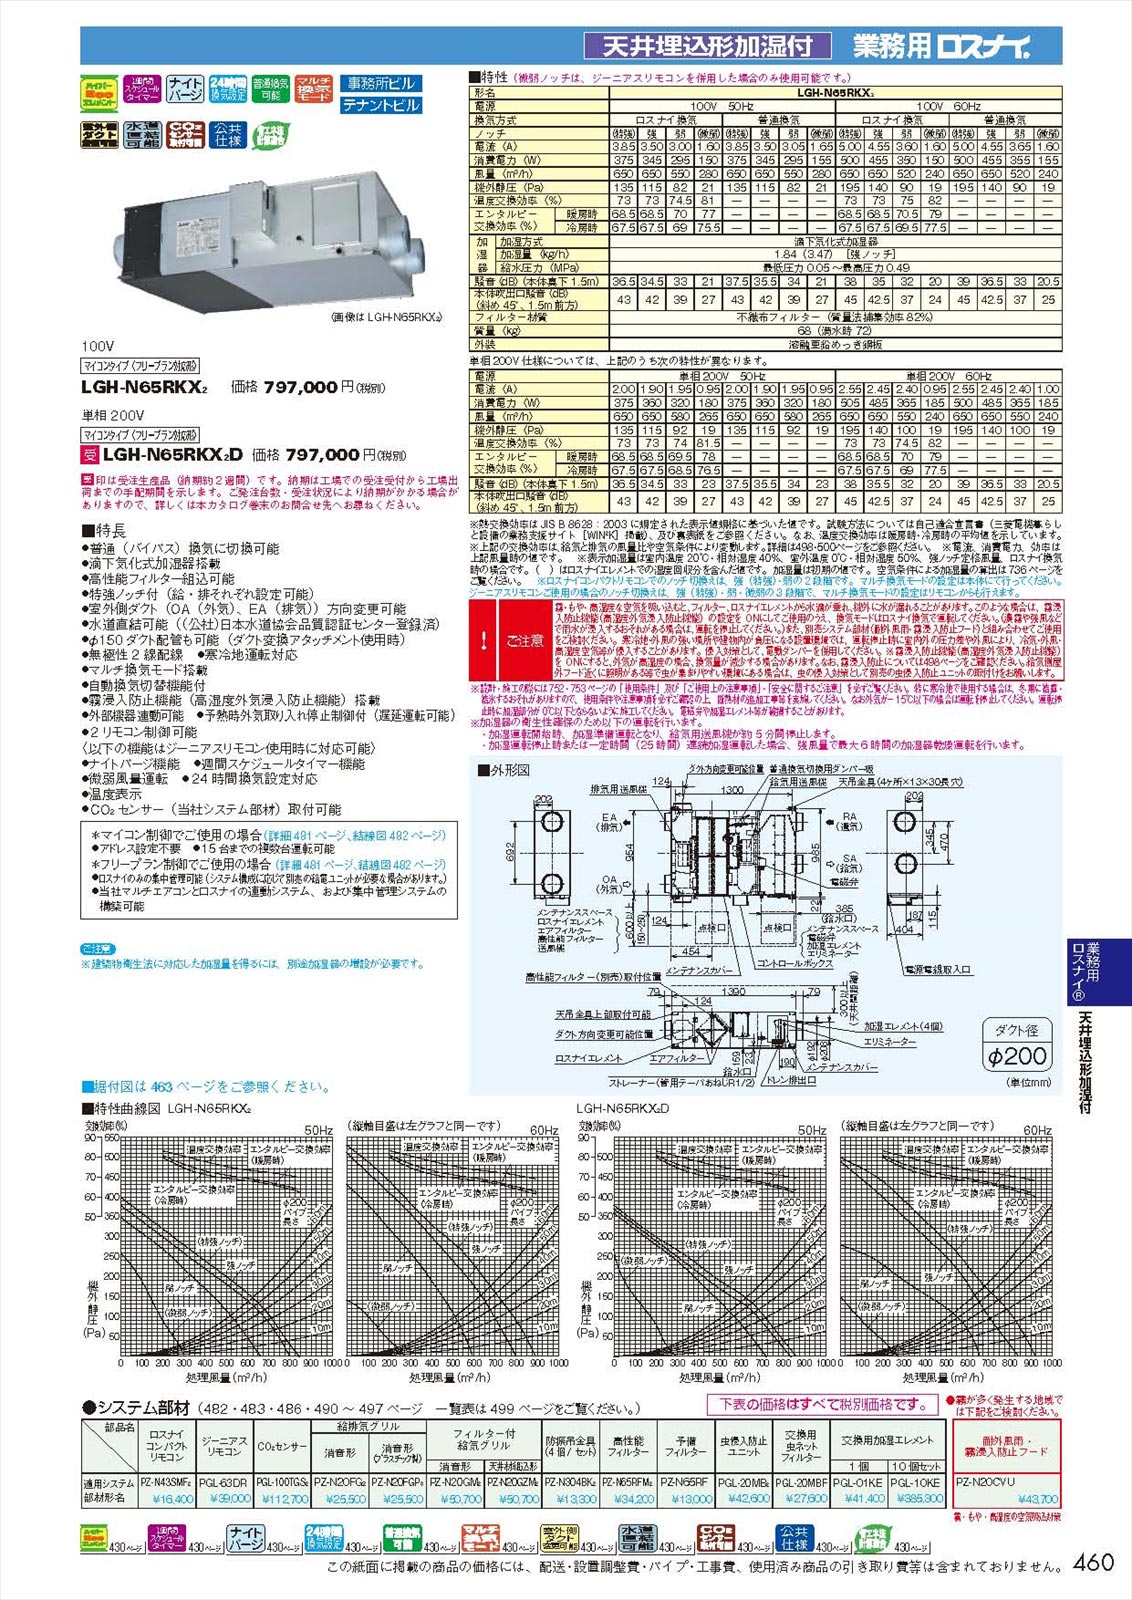 LGH-N65RKX2D】 《KJK》 三菱電機 業務用ロスナイ 天井埋込形 加湿付マイコンタイプ ωβ0 :lgh-n65rkx2d:KJK  通販 